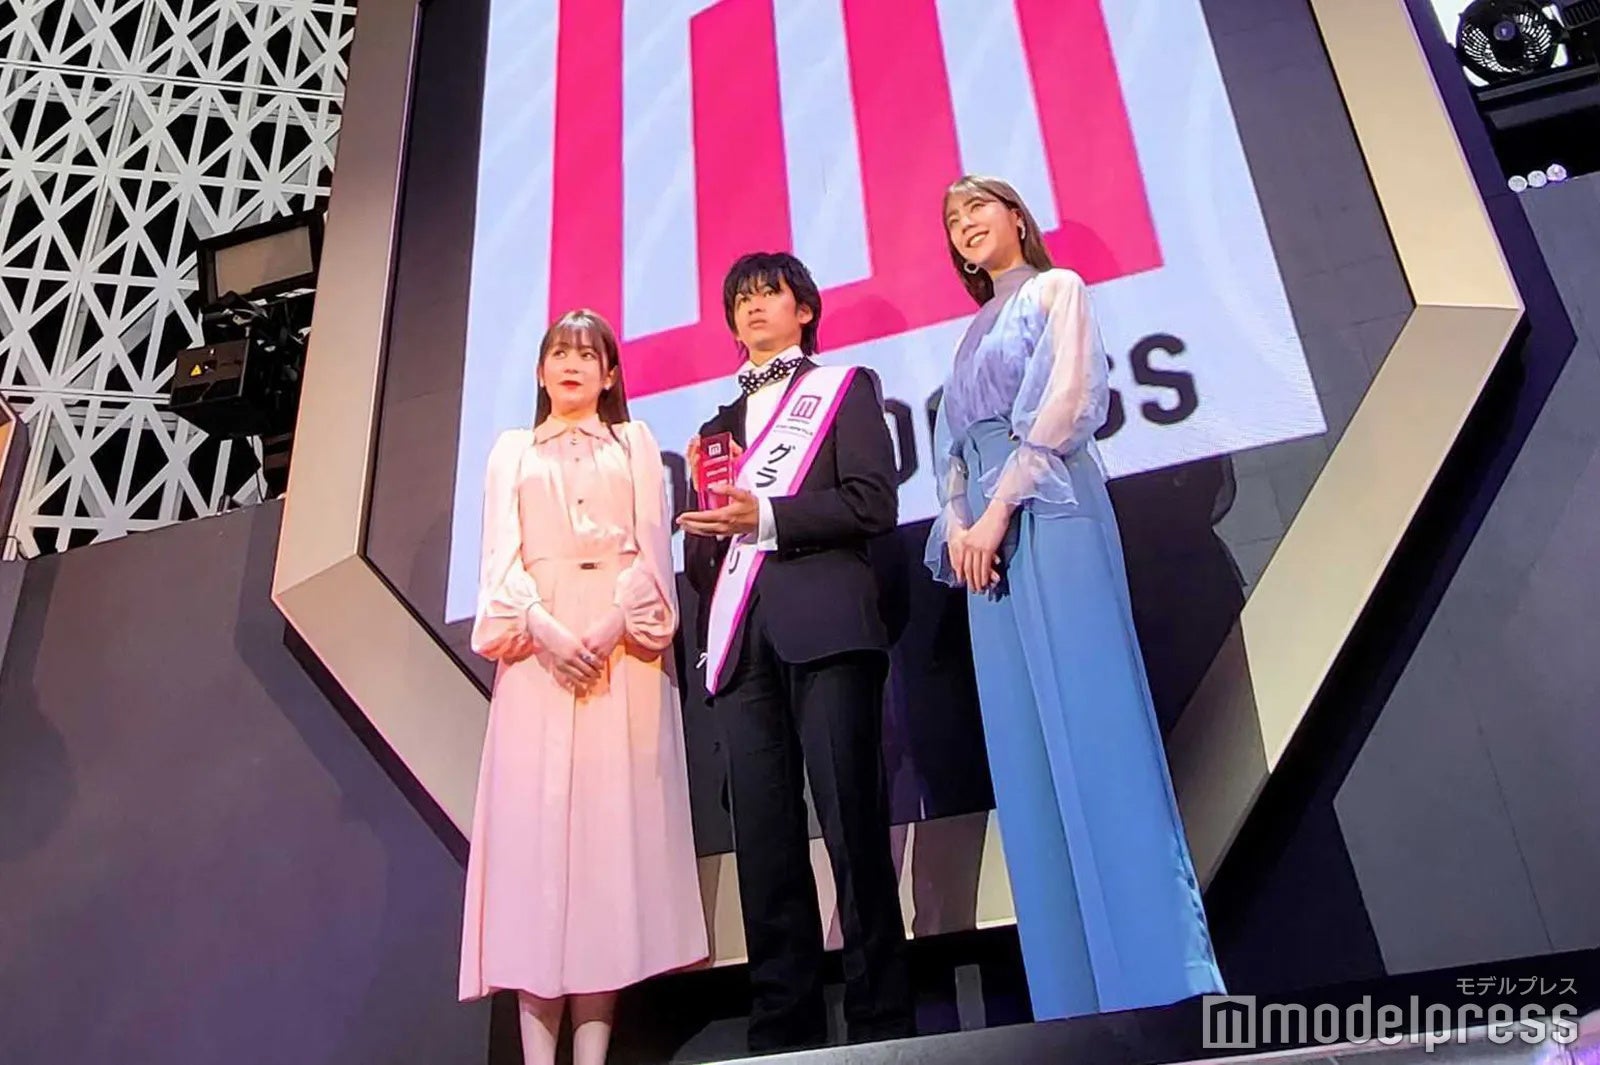 「ミスモデルプレス」初代グランプリは現役レースクイーンの仲美由紀さん 発表イベントには久間田琳加もプレゼンターで登壇